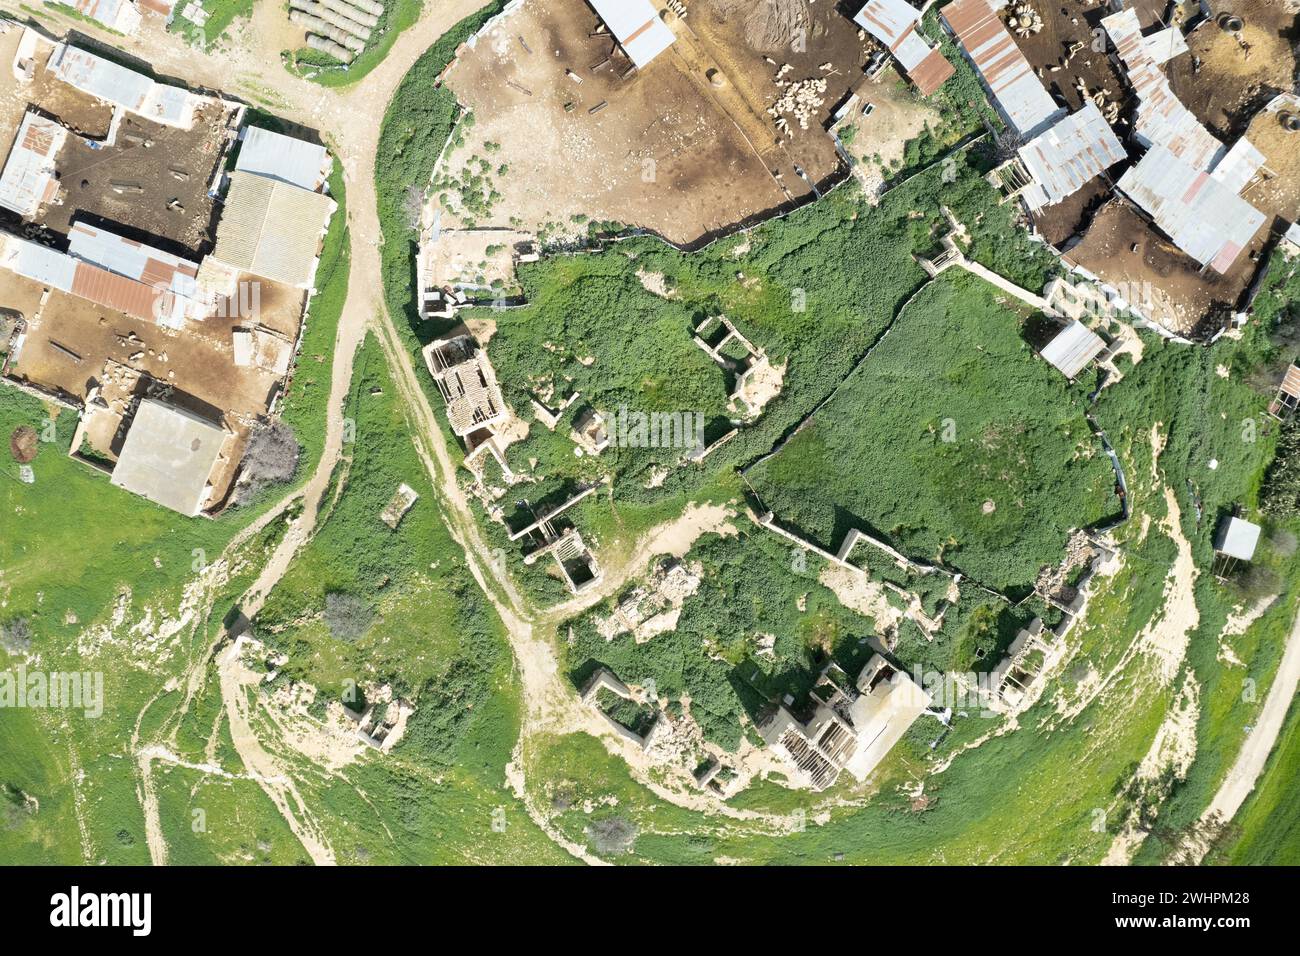 Vue aérienne drone d'un village abandonné déserté. Ruines de la vieille ville déserte Banque D'Images